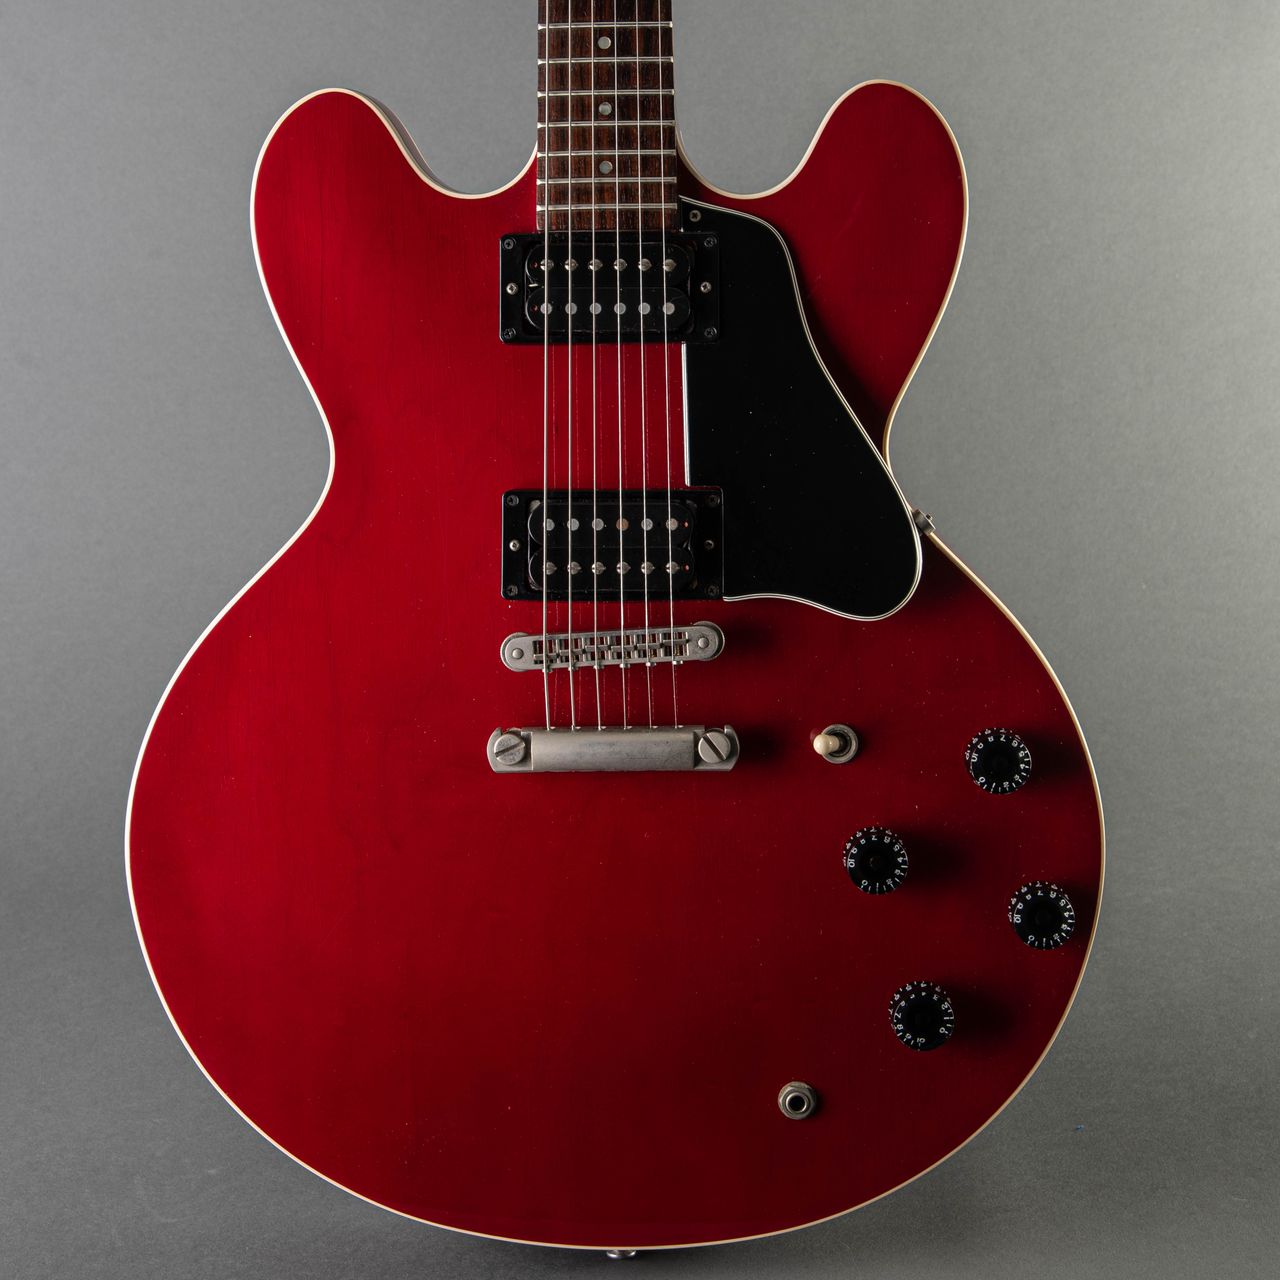 ひし型 Gibson ES-335 Studio Wine Red ヘッドインレイ無し - エレキギター